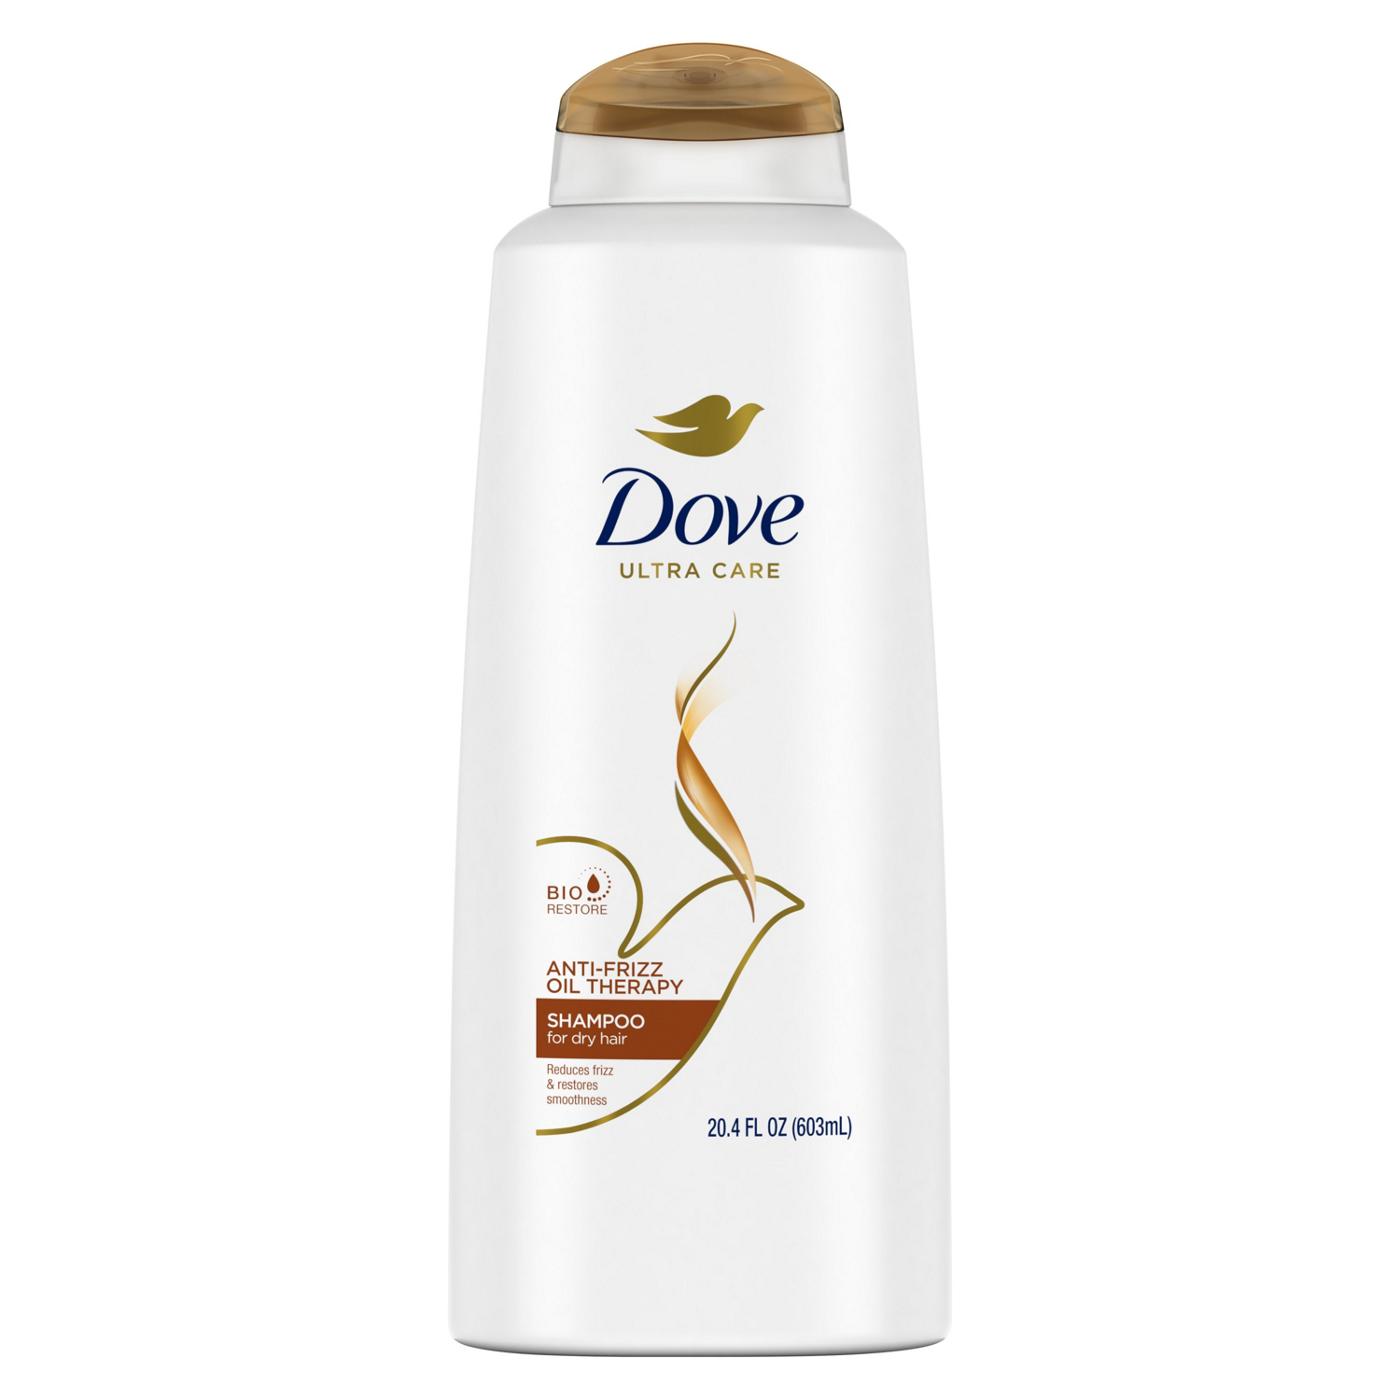 Dove Anti-Frizz Therapy Shampoo - Shop Shampoo & Conditioner at H-E-B